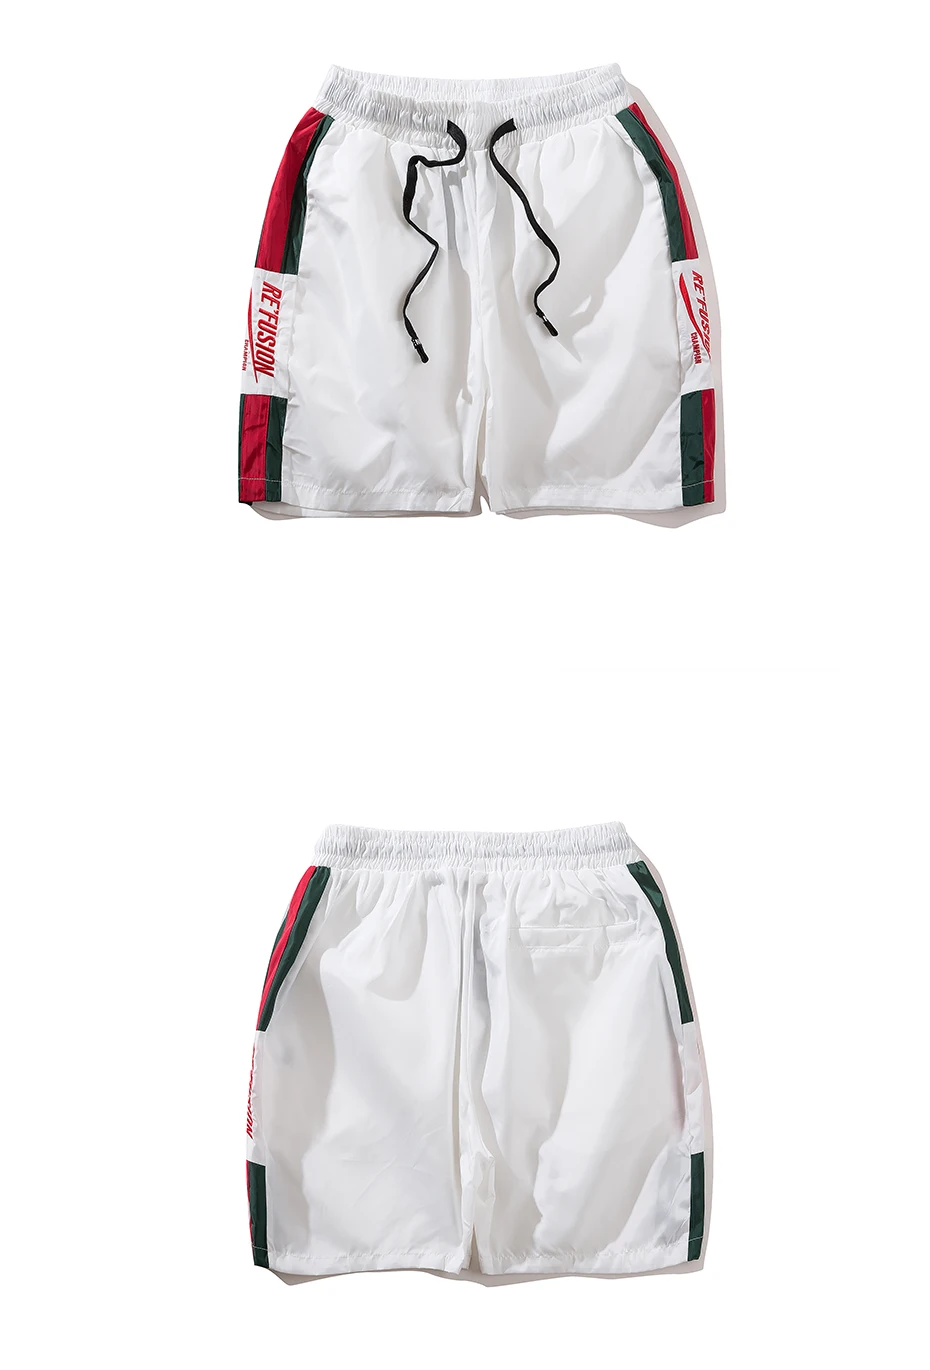 Для мужчин s тренировки шорты с вышивкой с надписями 2019 Джастин Бибер шорты Для мужчин Повседневное уличная летом тонкие короткие Jogger Fk07